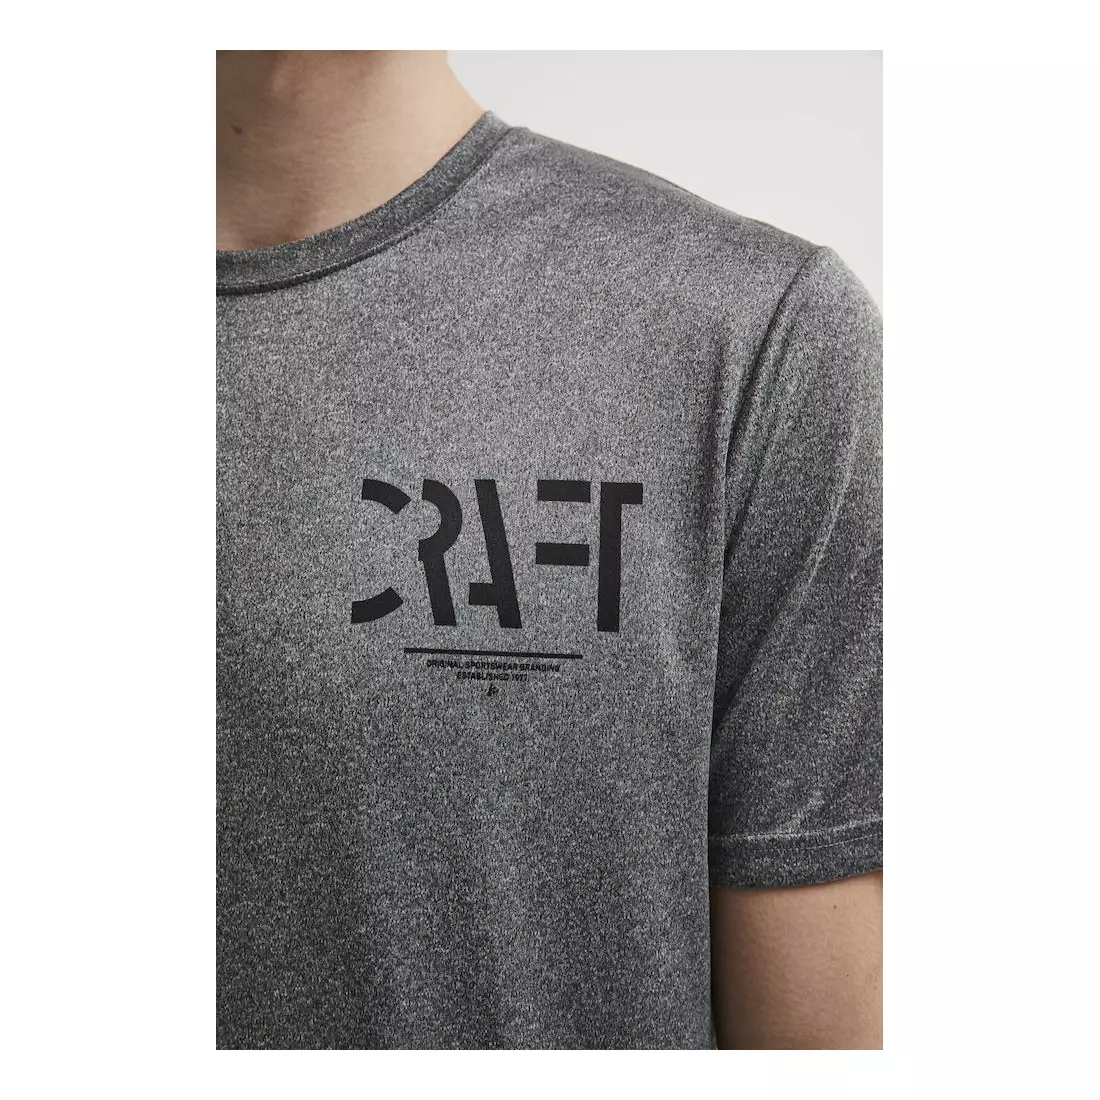 CRAFT EAZE men's sports T-shirt, gray, 1906034